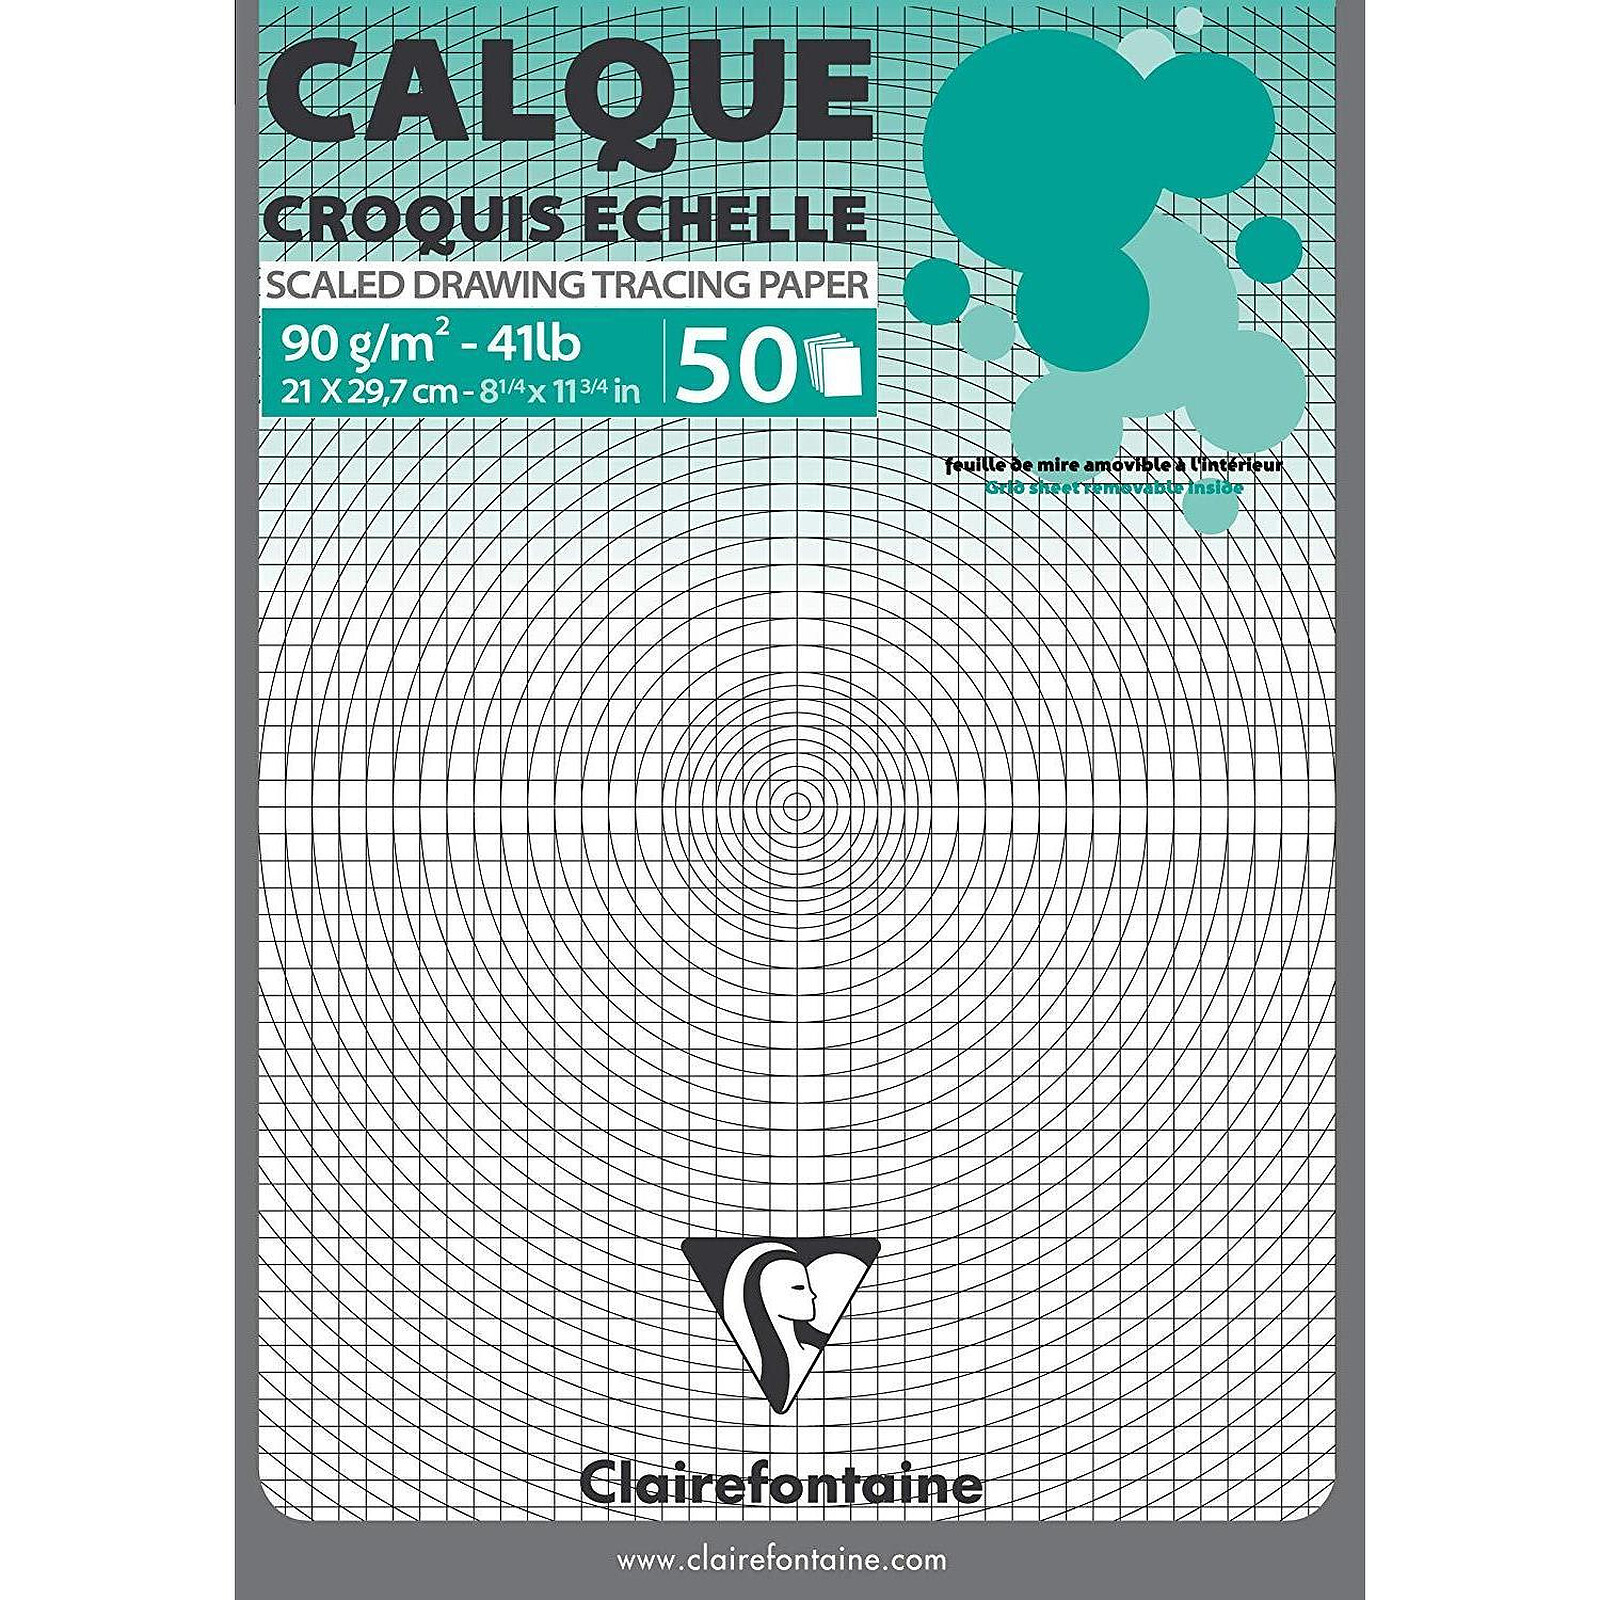 CANSON Papier Calque 70g/m2 A4 16 FEUILLES